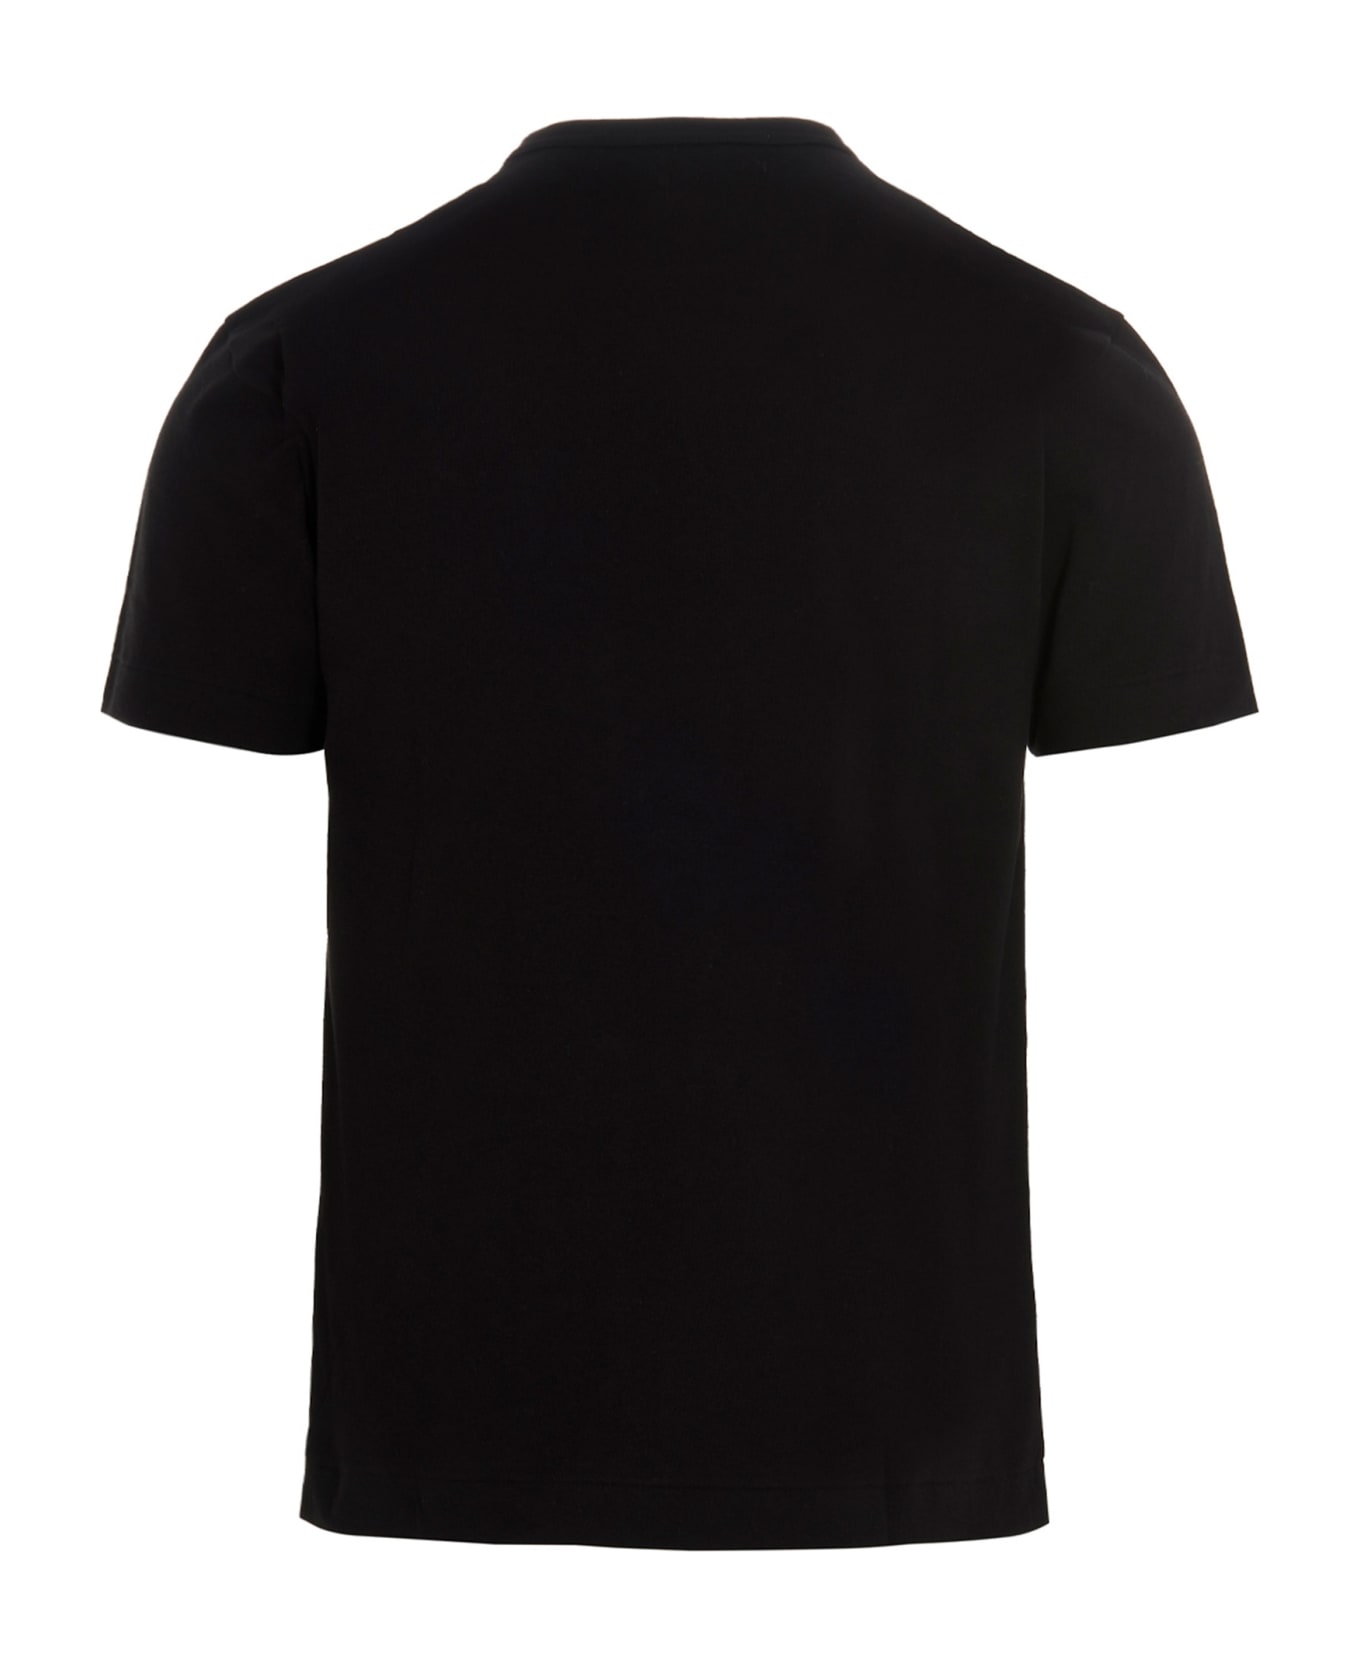 Comme des Garçons Play Logo Patch T-shirt - Black   シャツ